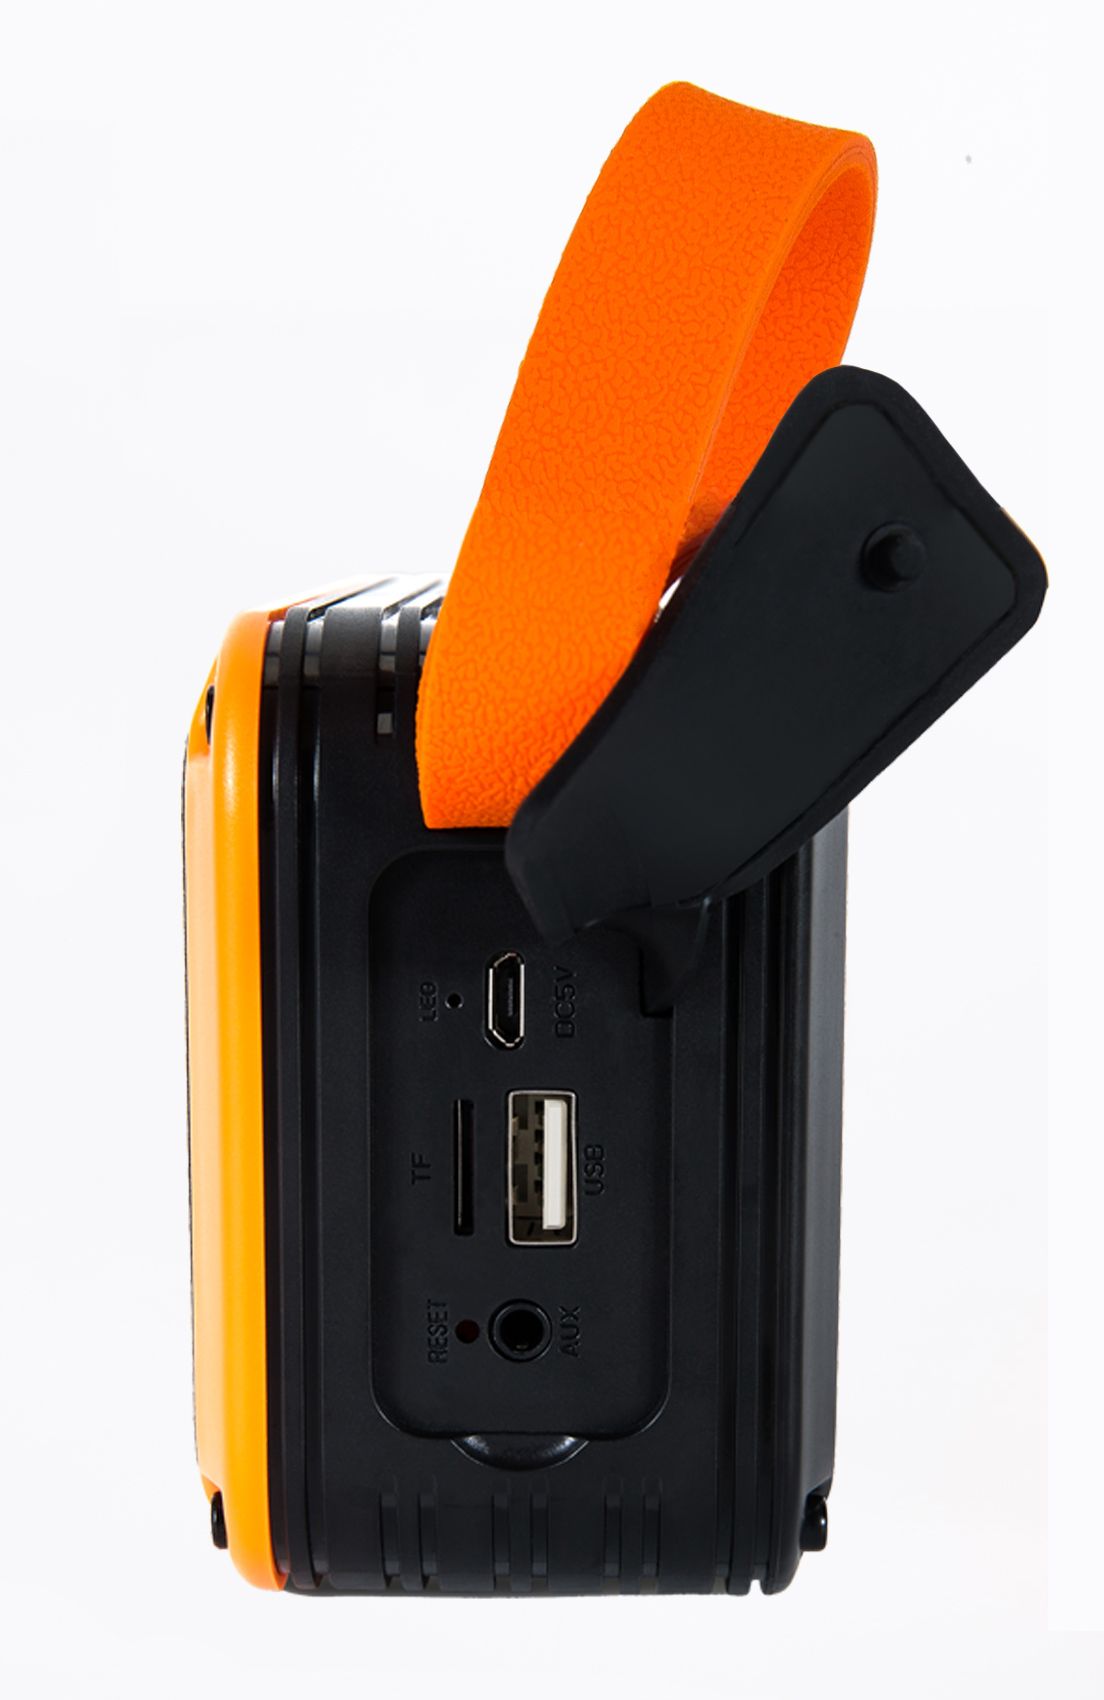 MCE-V7爆款音箱性价比天线显示屏便携手提蓝牙插卡USB音箱非洲细节图